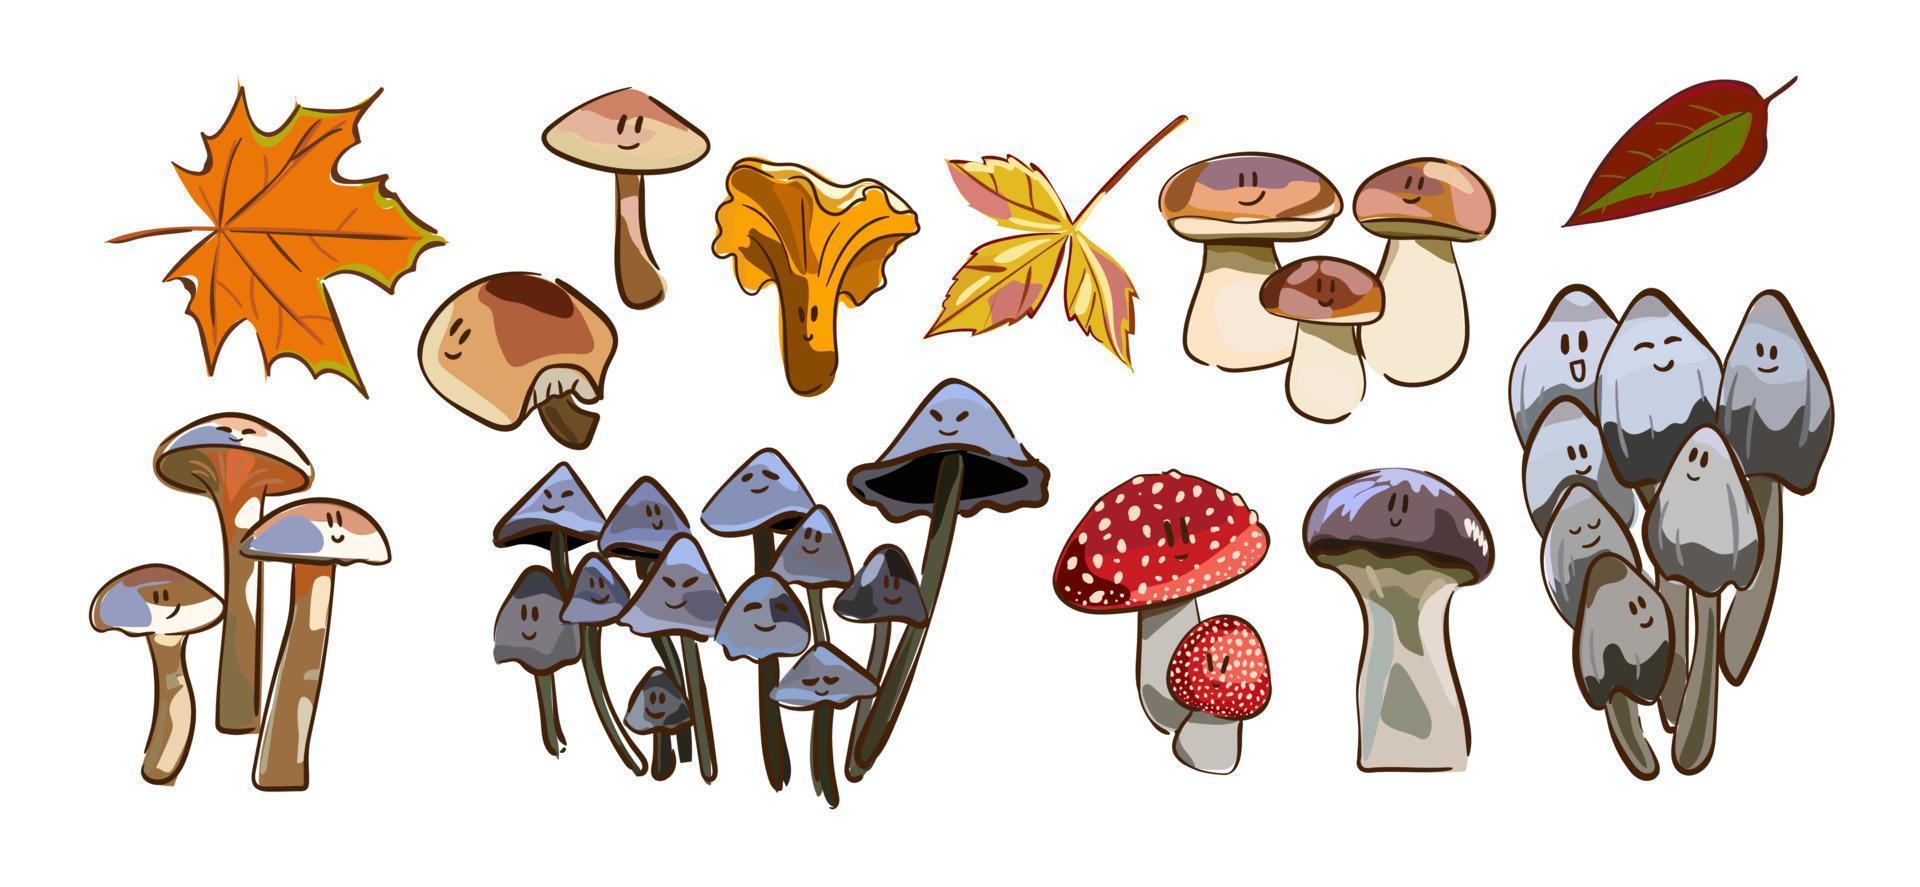 cogumelos dos desenhos animados. conjunto de ilustração vetorial isolado cogumelo venenoso e comestível. tipos de cogumelos selvagens da floresta. vetor